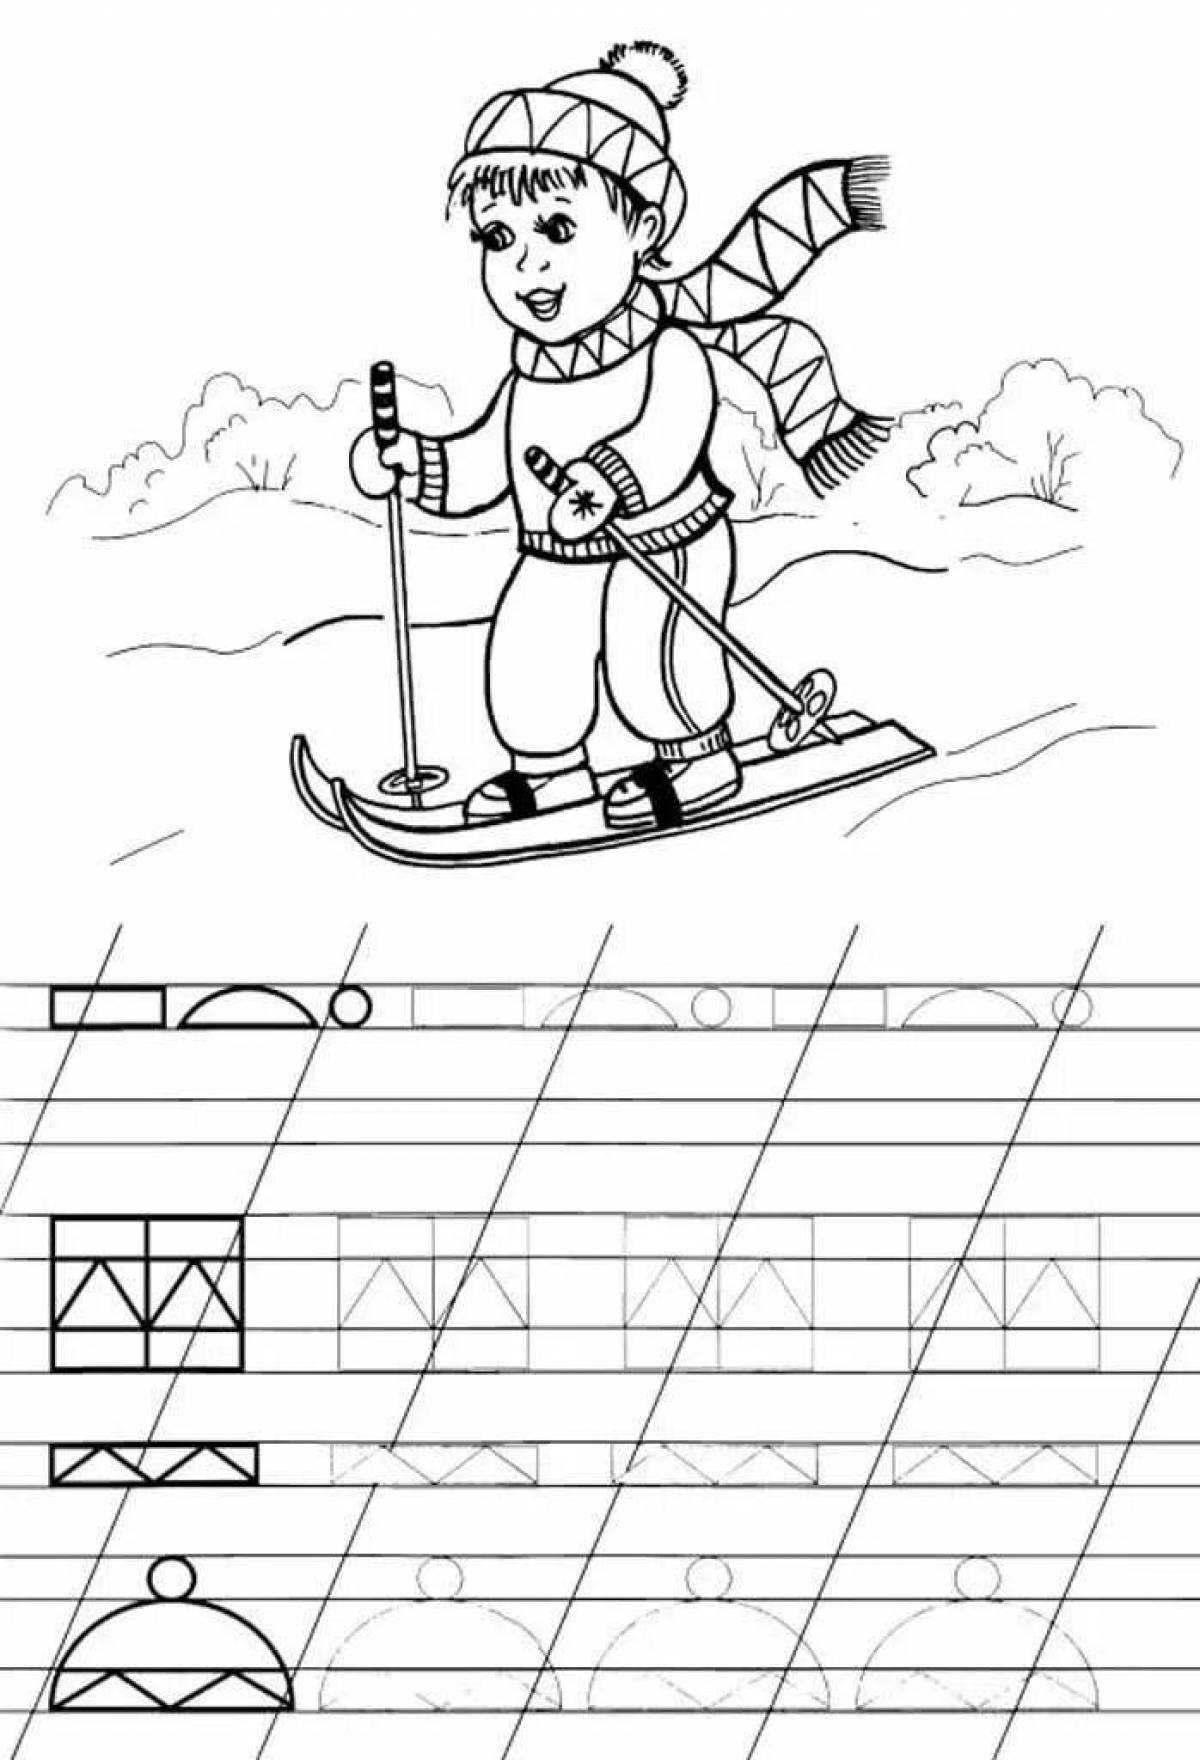 Раскраска мальчик-авантюрист, катающийся на лыжах